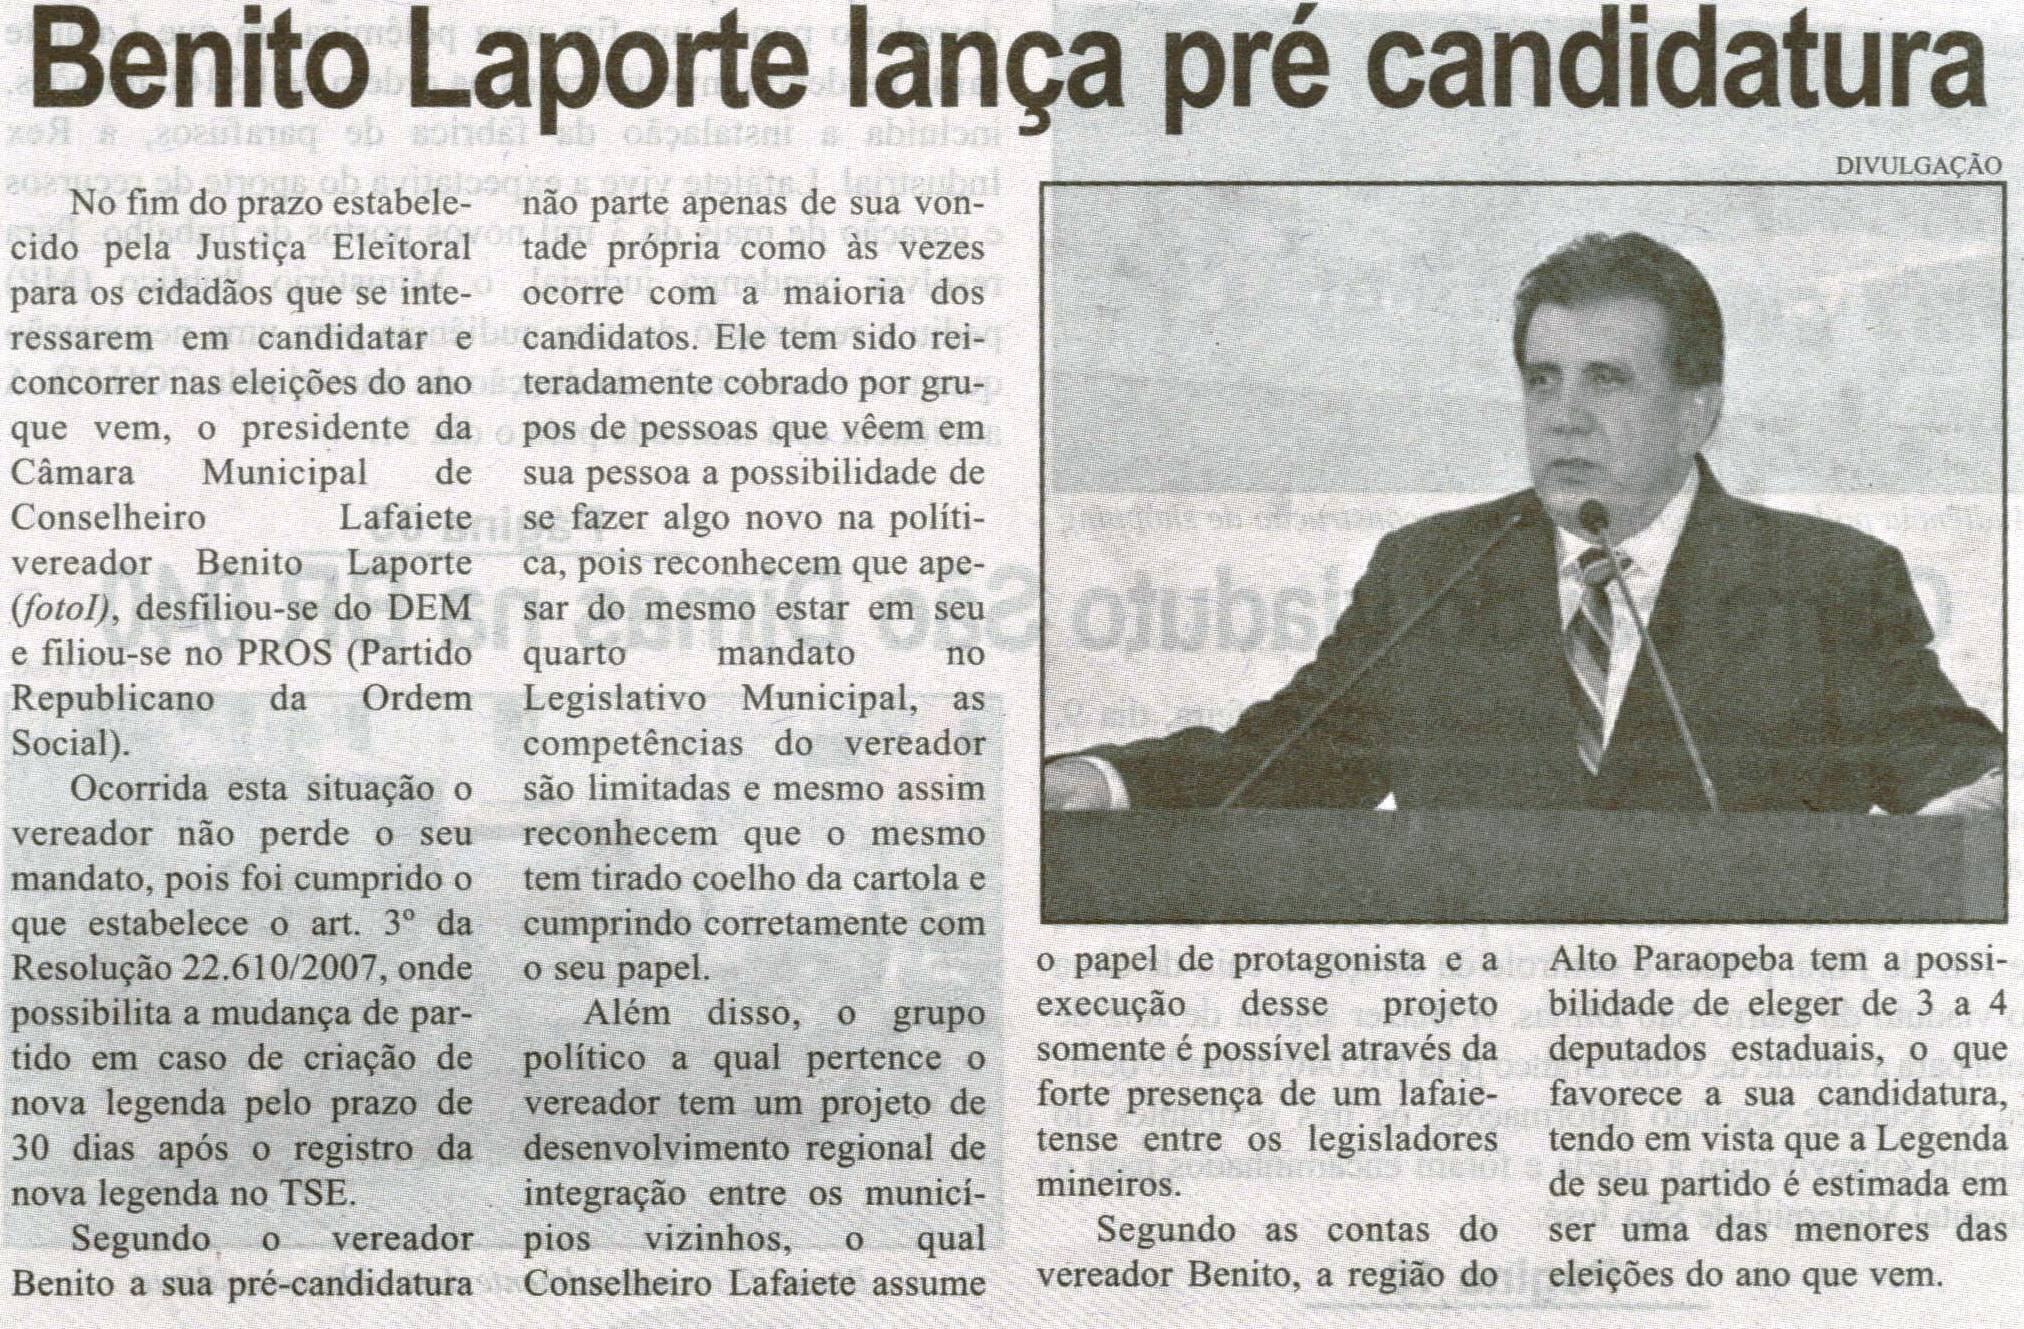 Benito Laporte lança pré candidatura. Correio de Minas, Conselheiro Lafaiete, 12 out. 2013, p. 02.